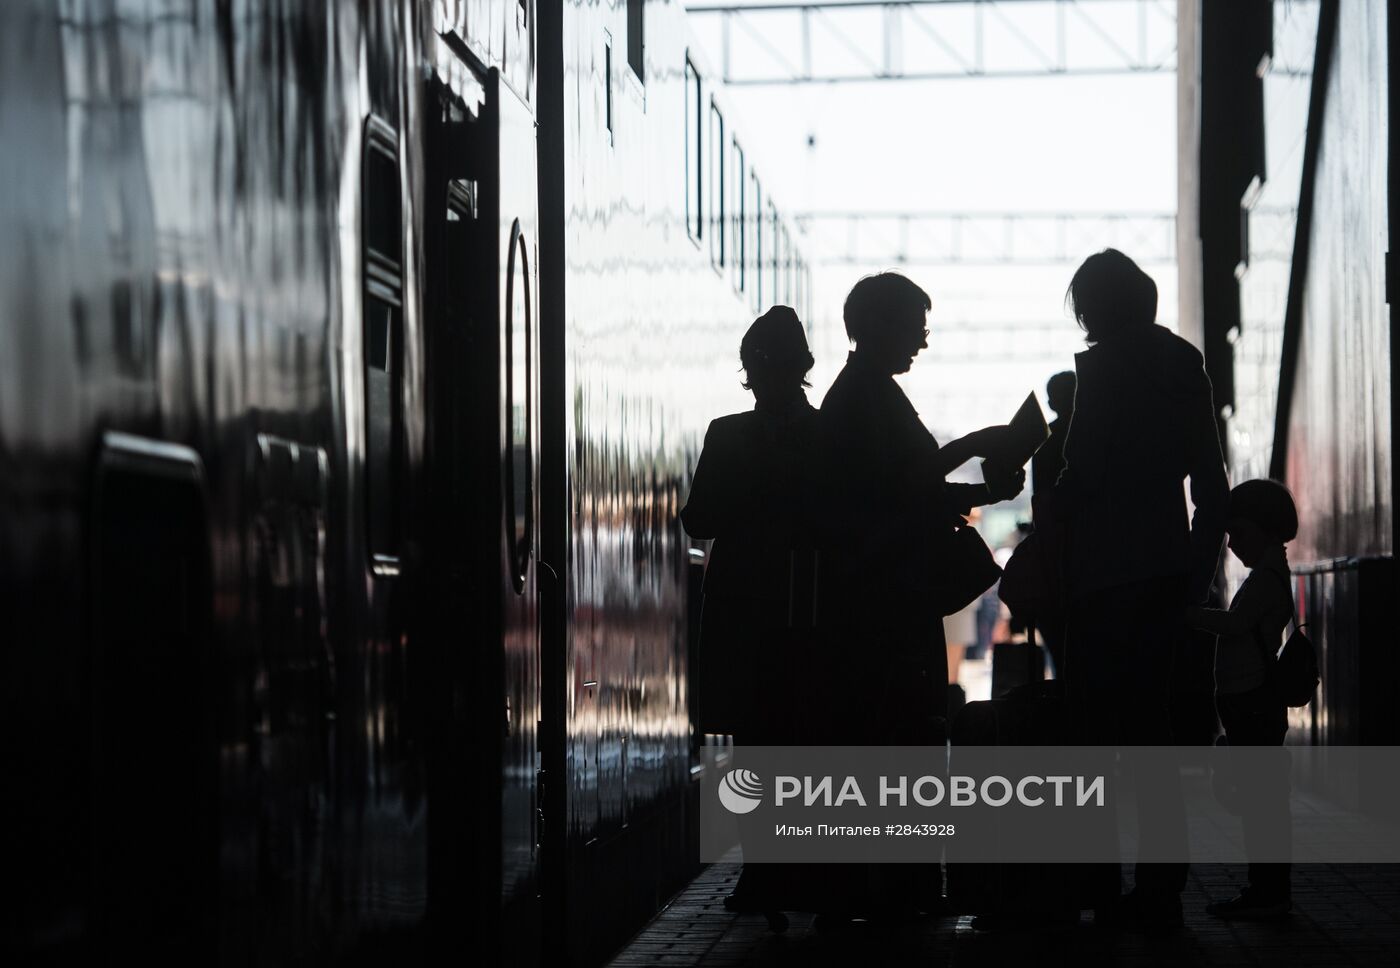 Отправление первого поезда, оформленного в честь Года российского кино